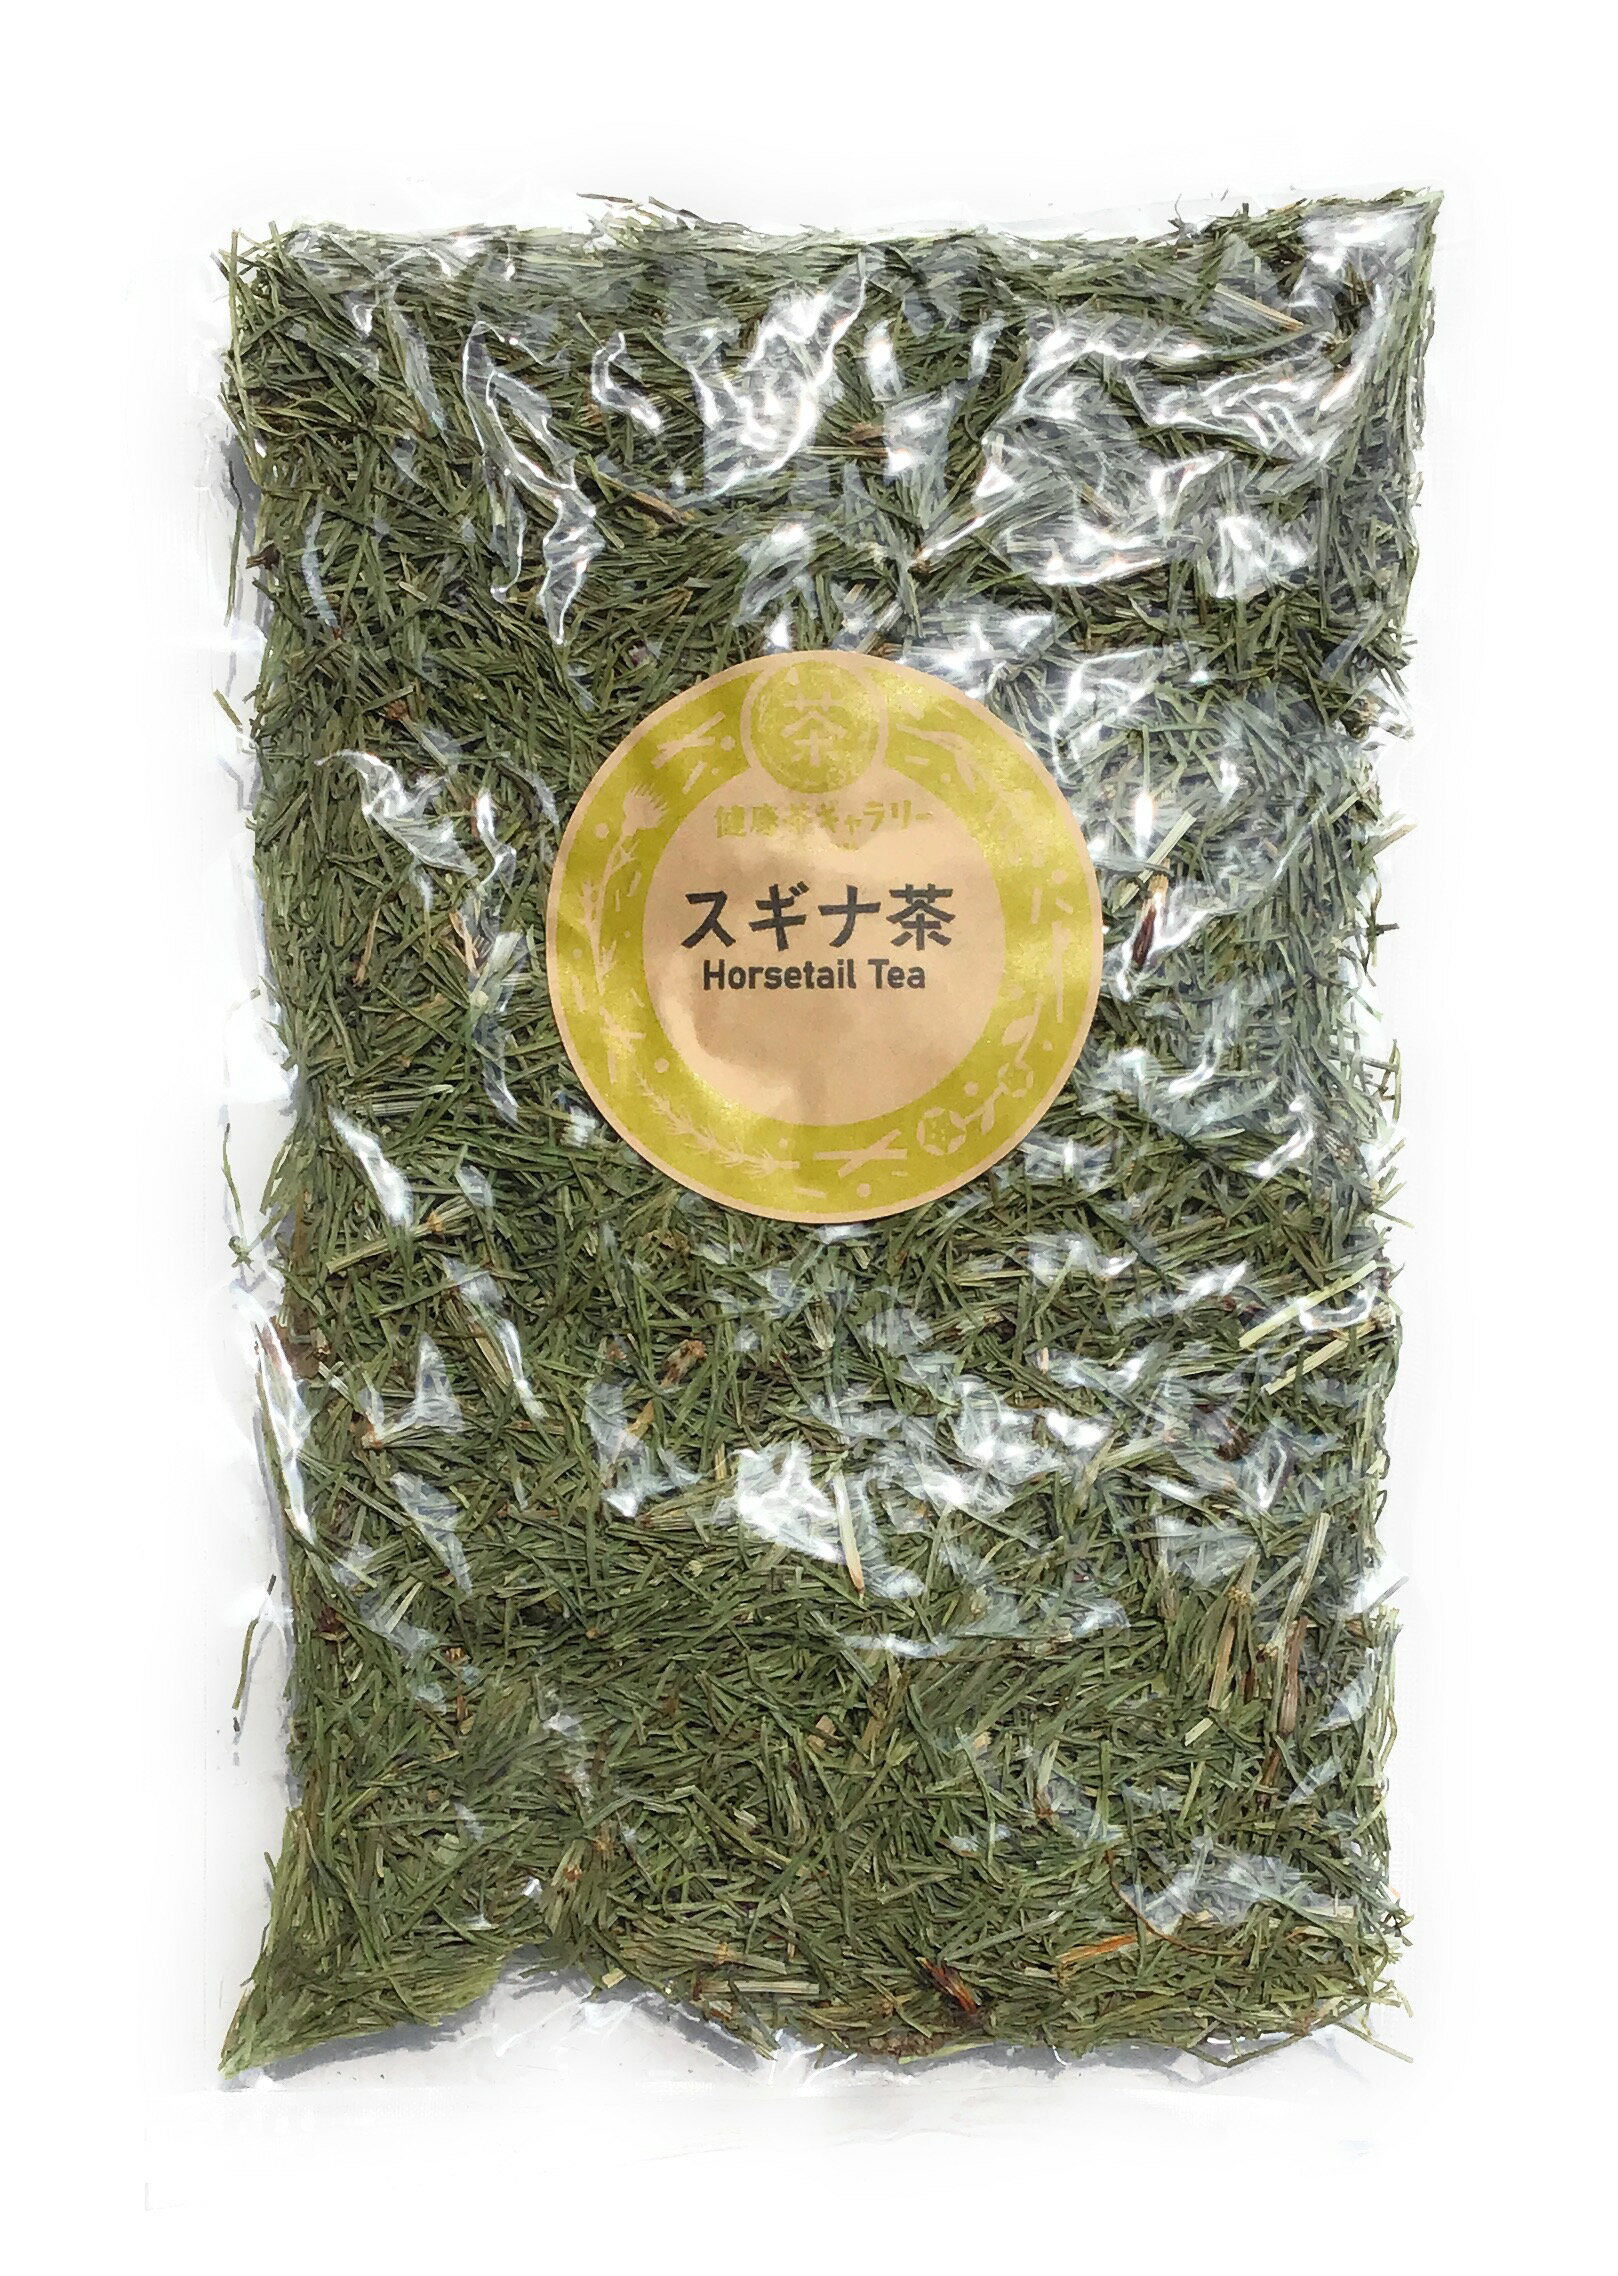 内 容 スギナ茶 50g 保存方法 直射日光、高温多湿を避けて保存。 原材料 スギナの茎・葉 原産国 日本 賞味期限 1年以上 広告文責 健康茶ギャラリー 0172-35-8458 メーカー（製造） 健康茶ギャラリー 区分 日本製・健康茶スギナ茶 Horsetail Tea トクサ科スギナ(ホーステール)の葉のお茶。 古くから体内機能の調整に用いられています。 水分の滞りが気になる方、健やかな呼吸や みずみずしいツヤを維持したい方におすすめです。 ※ノンカフェイン ※心臓・腎臓の機能不全の方、妊娠中の方は飲用をお避けください。 ※本品製造工場では「大豆」を含む製品を製造しております。